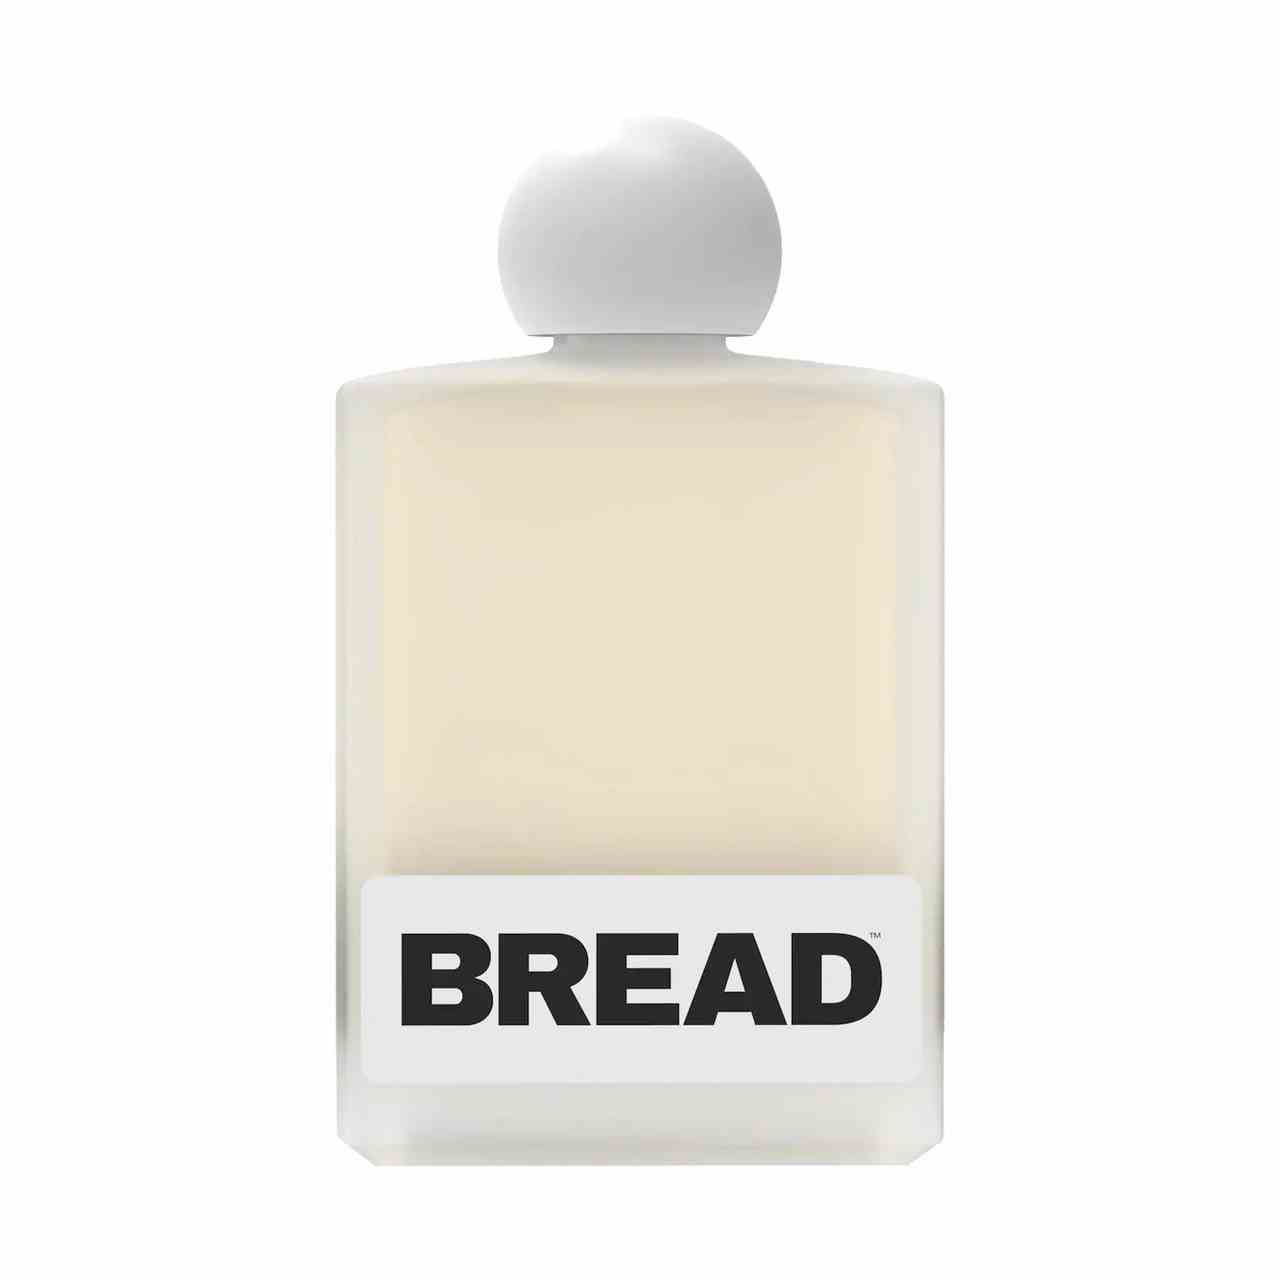 Brot Beauty Supply Macadamiaöl Quadratische Flasche hellgelbes Öl mit weißer Kugelkappe auf weißem Hintergrund